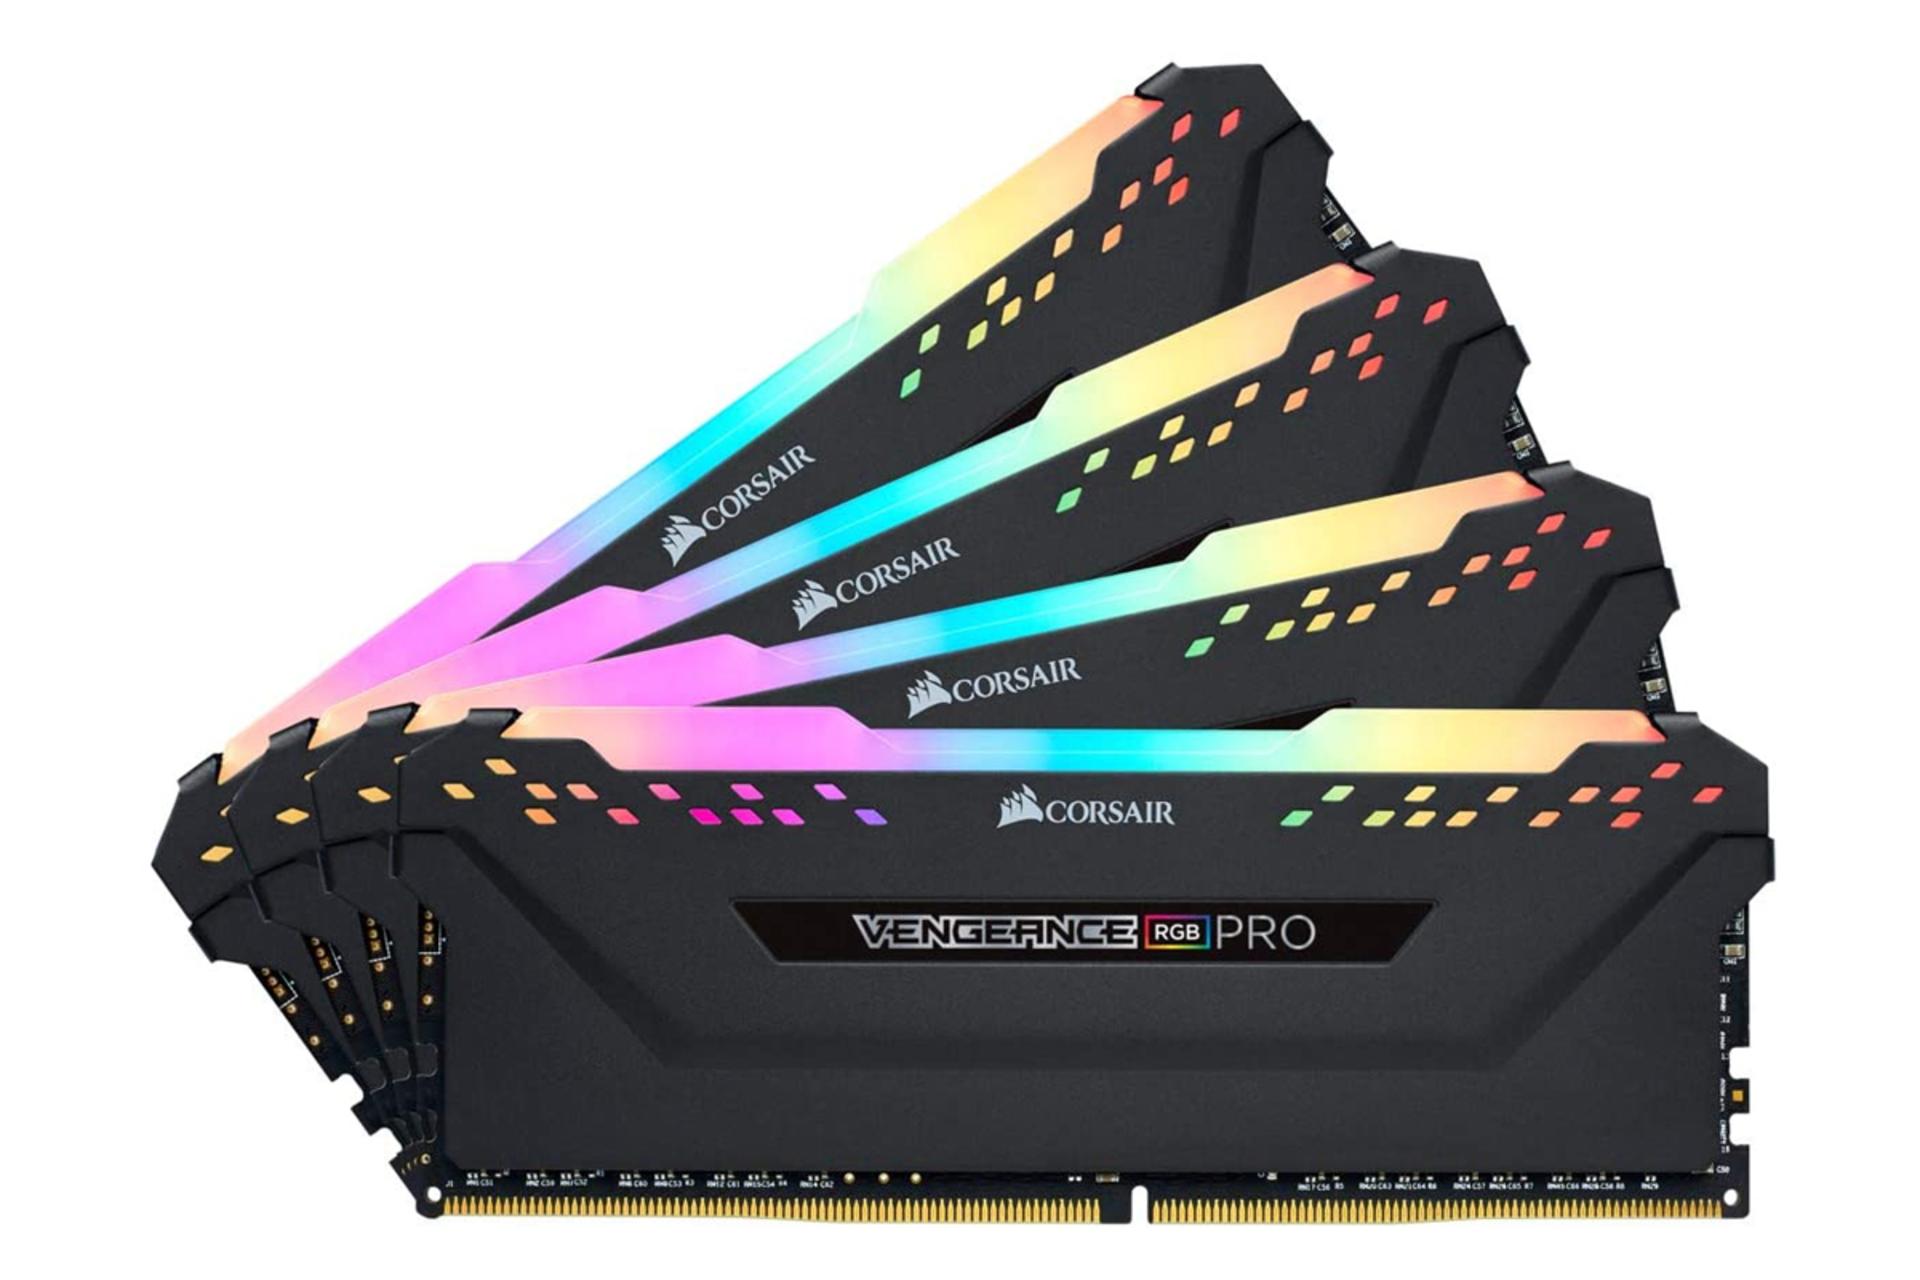 نمای جلو رم کورسیر VENGEANCE RGB PRO ظرفیت 32 گیگابایت (4x8) از نوع DDR4-3600